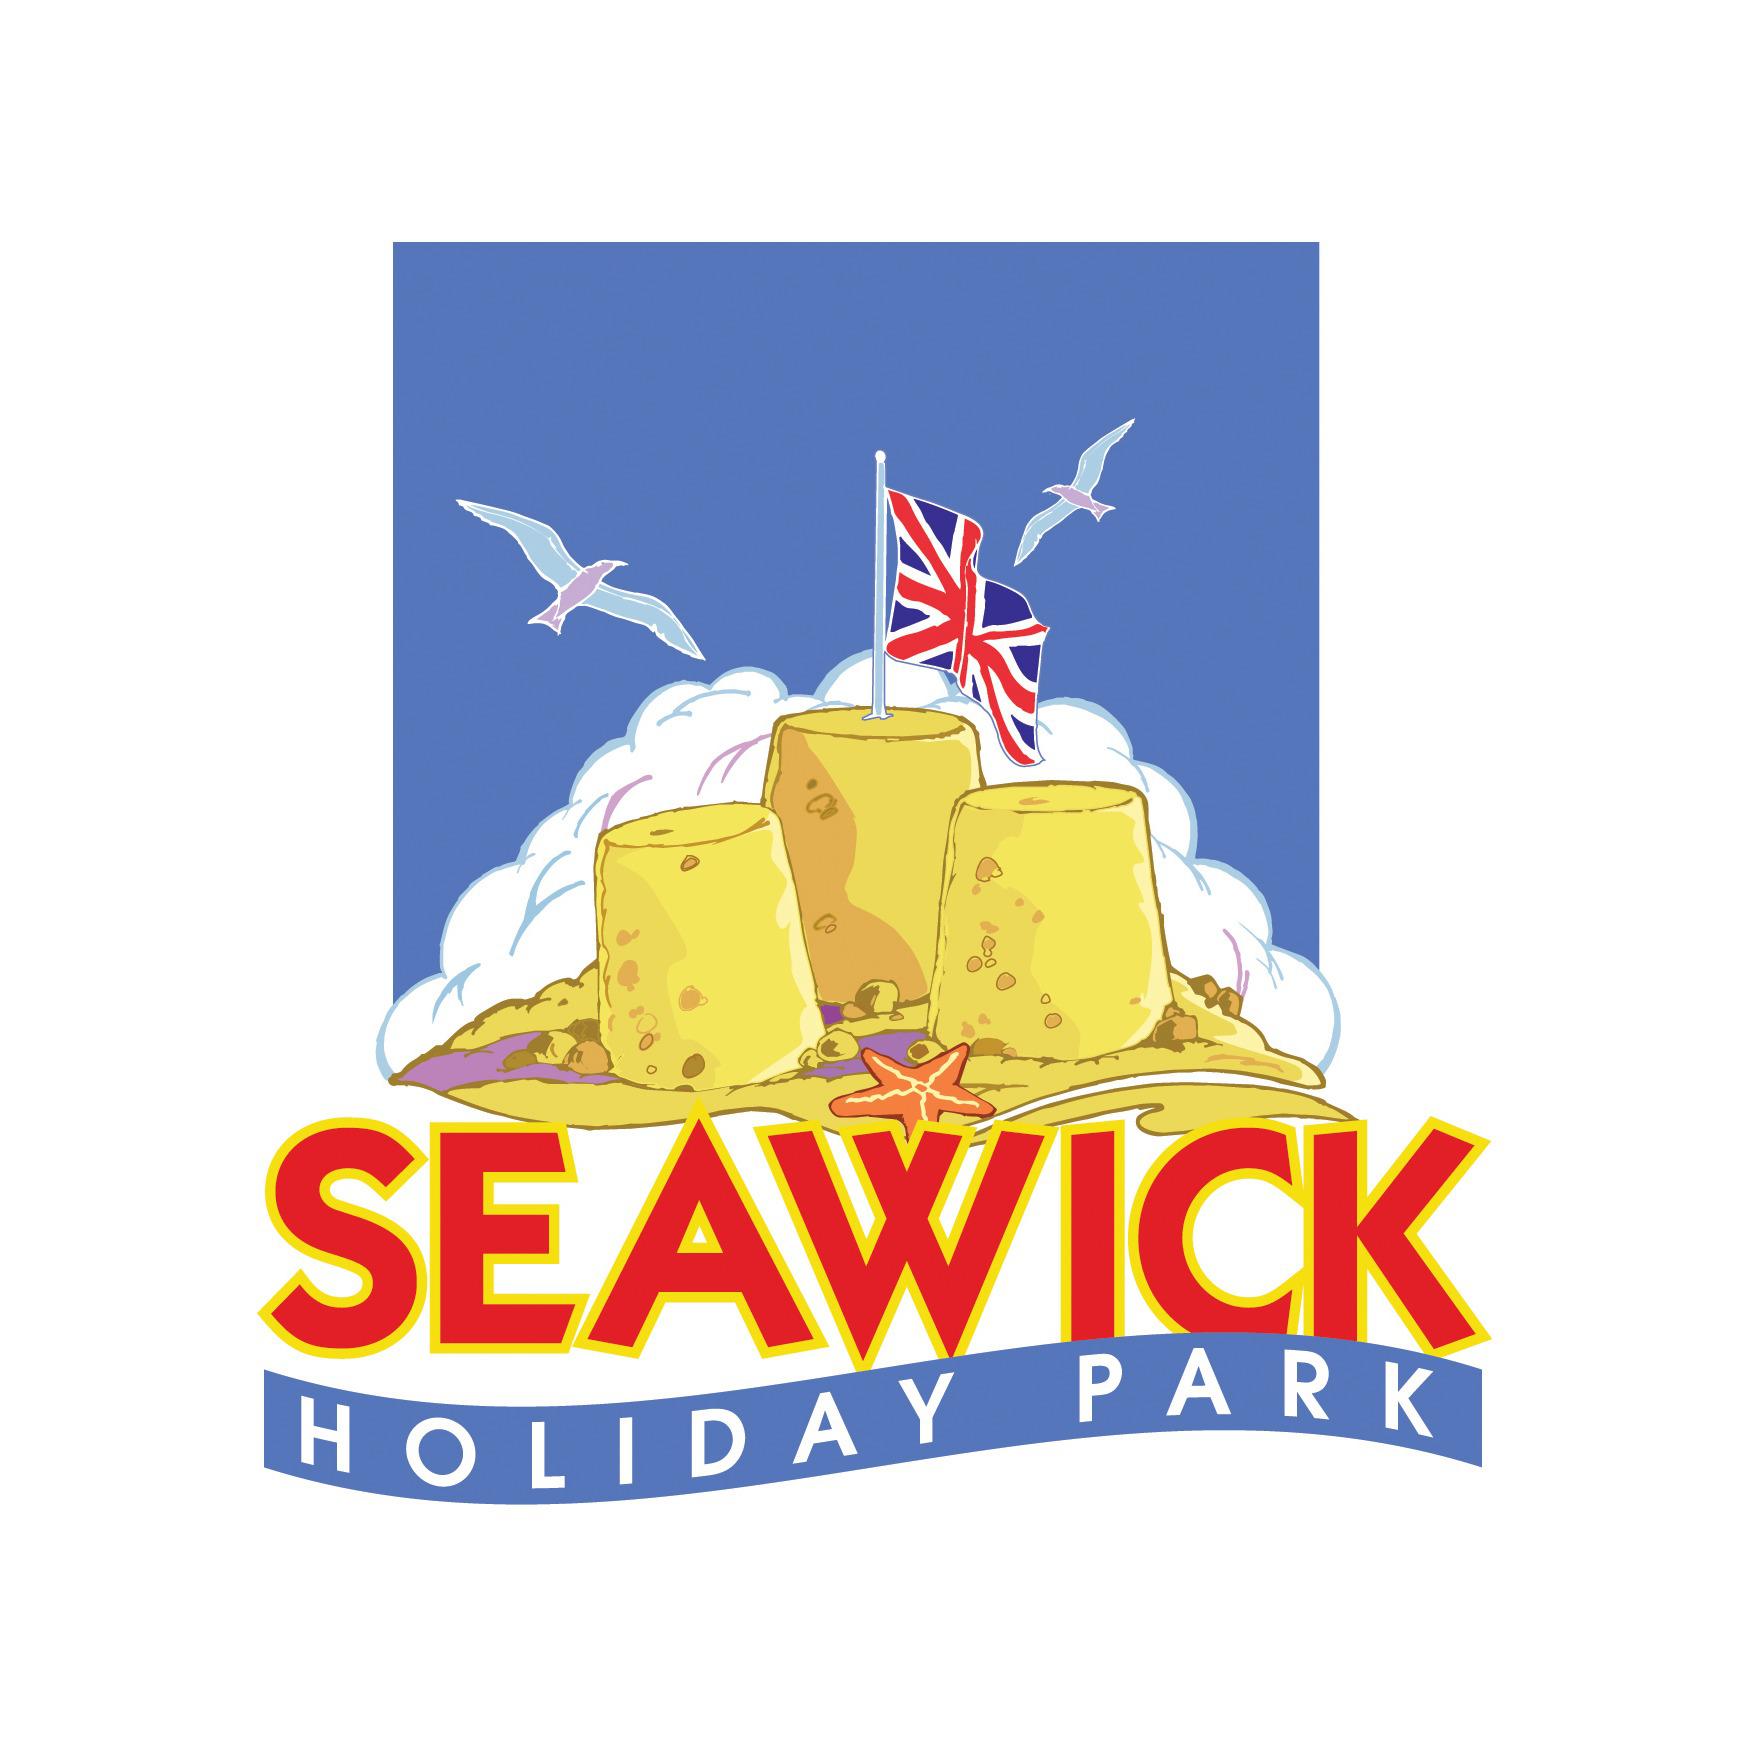 Seawick Holiday Park - Essex, Essex CO16 8SG - 01255 440788 | ShowMeLocal.com